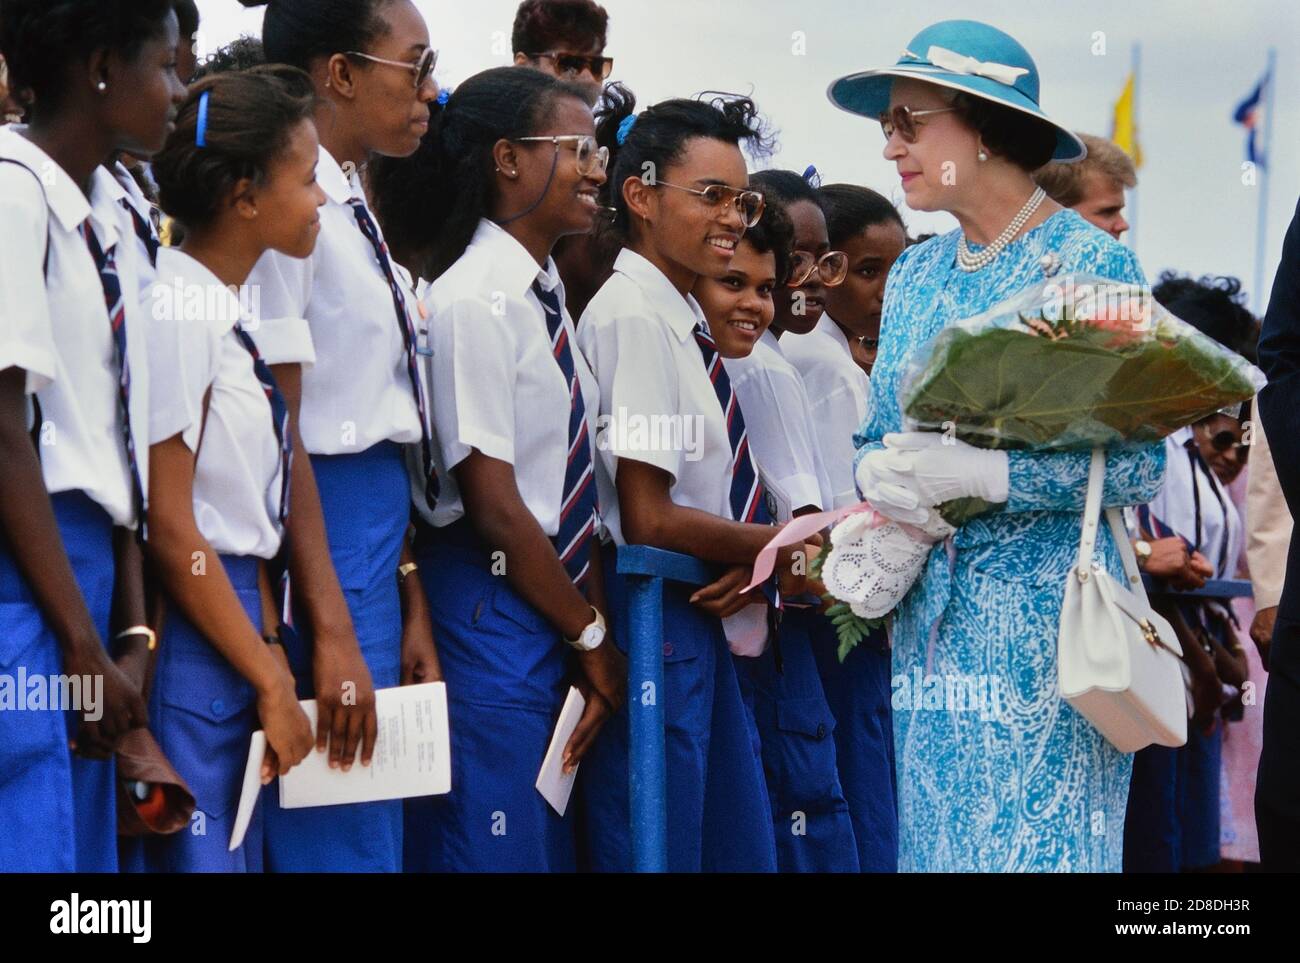 Eine Reihe lokaler Studenten und Schüler grüßen ihre Königliche Hoheit Königin Elisabeth II. Bei ihrem Besuch im Queen's College. Ihre Majestät war bei ihrem letzten Besuch auf der Karibikinsel Barbados. März 1989. Stockfoto